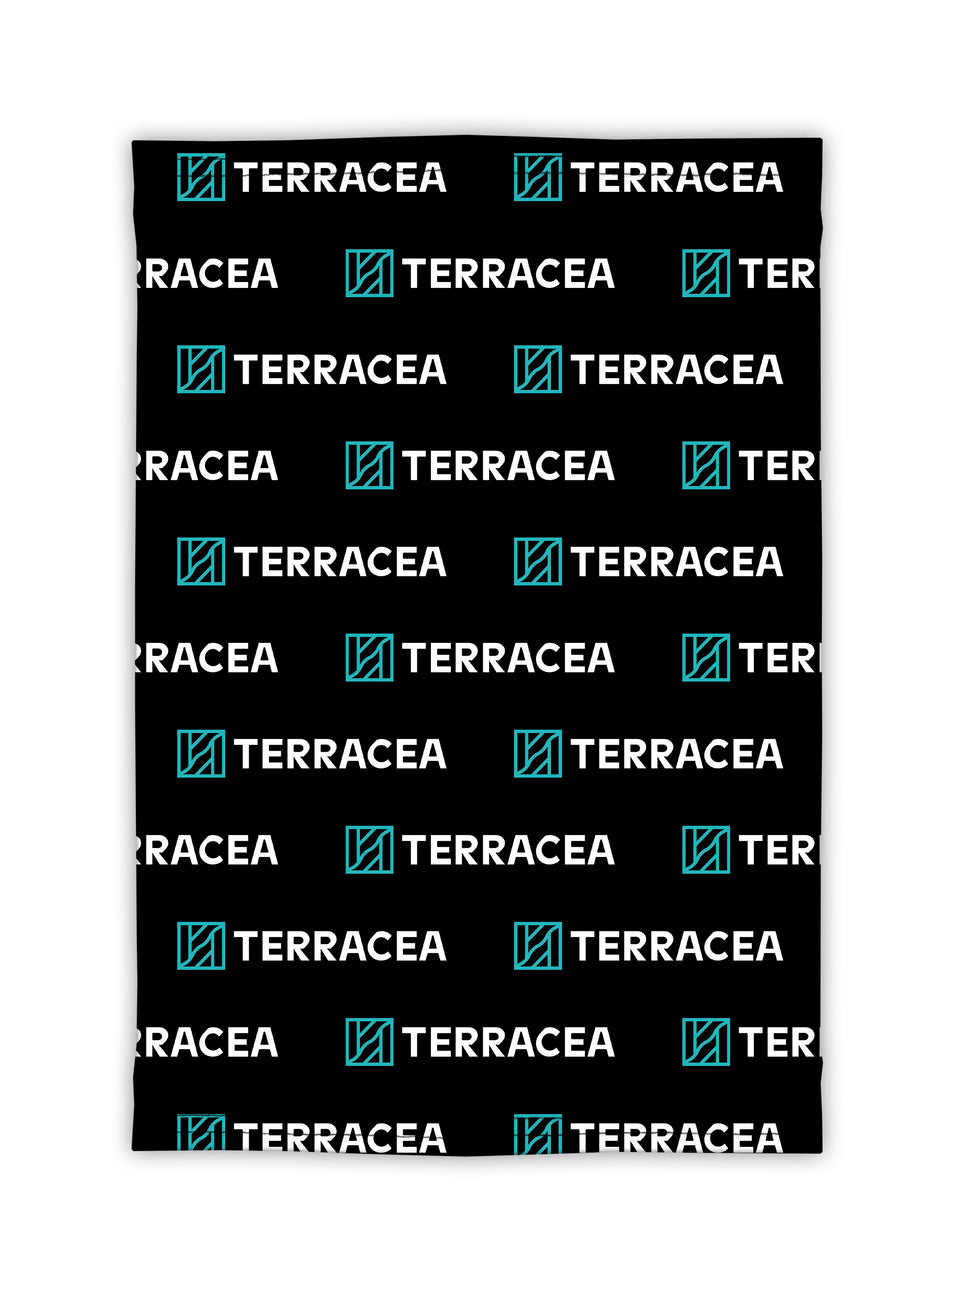 TERRACEA NECK TUBE by Terracea - Waterproof, Windproof, Weatherproof Technical Outerwear